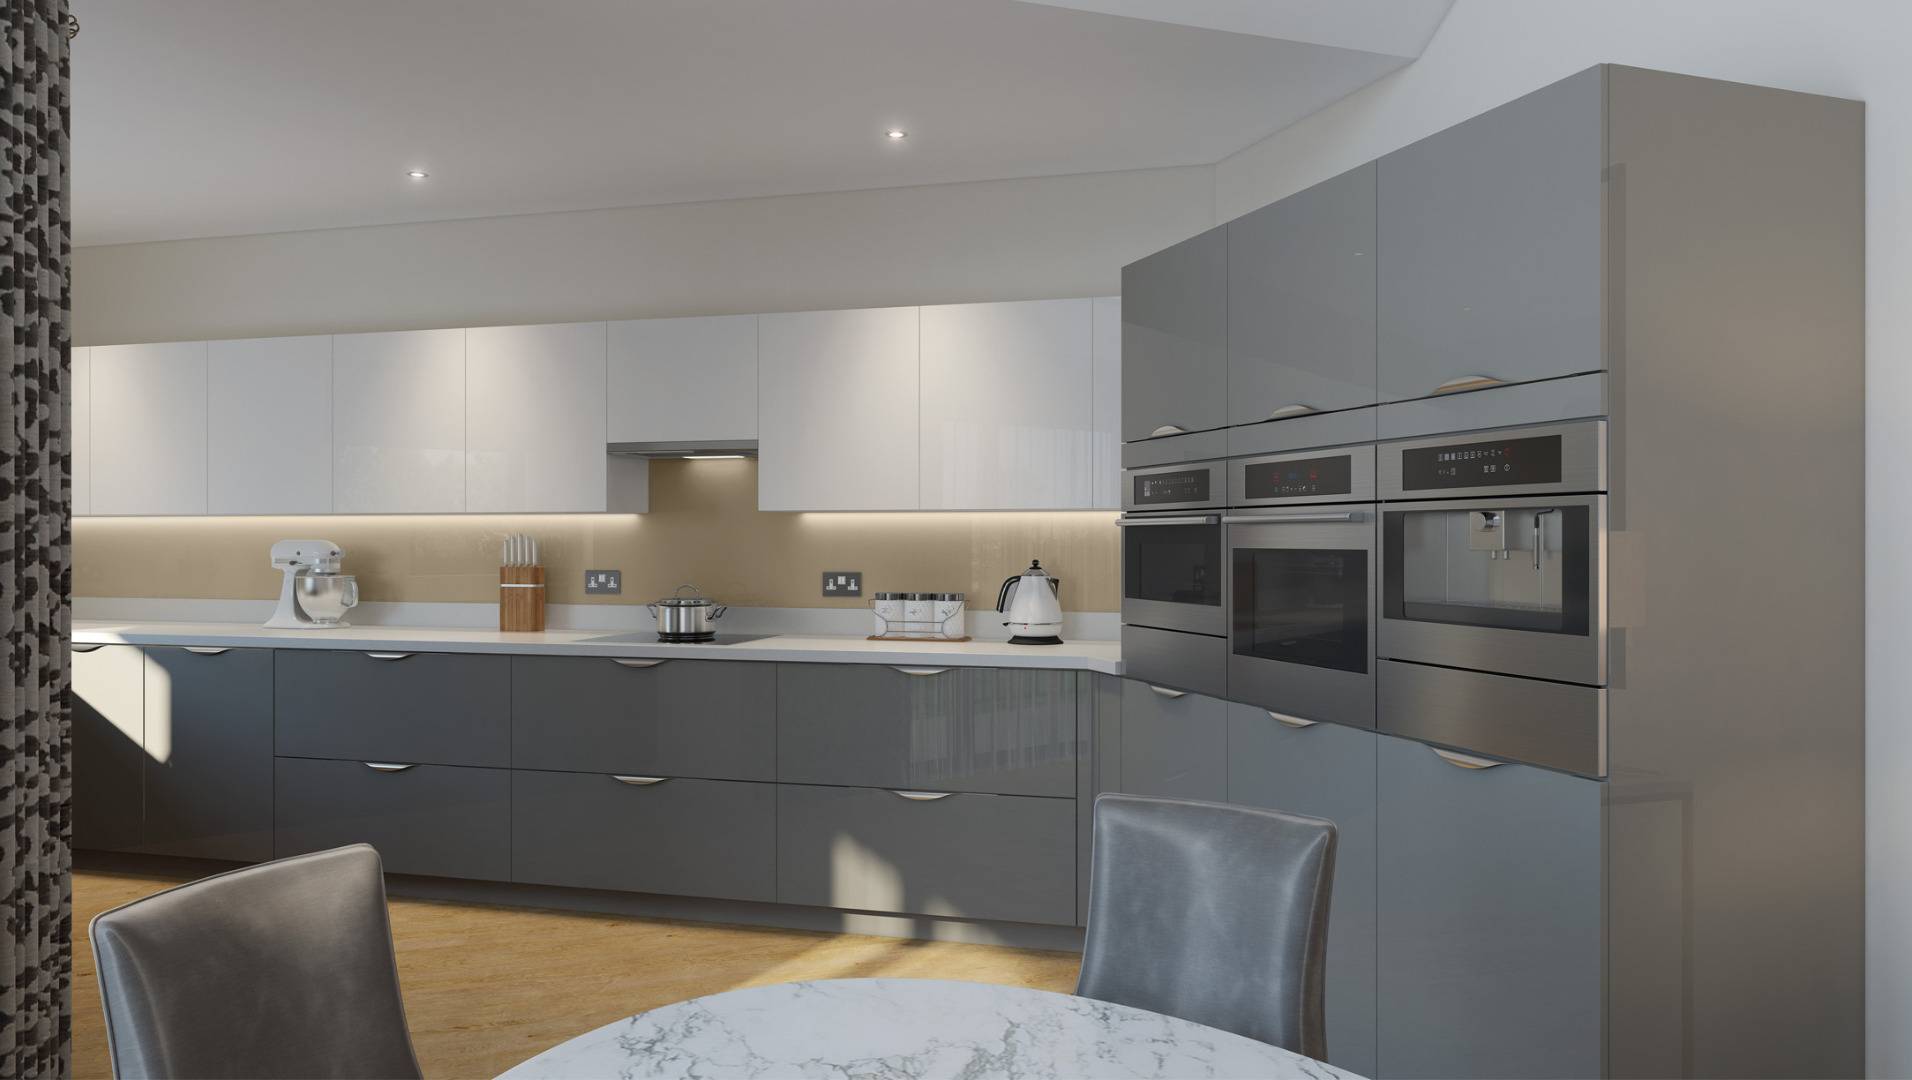 Дизайн кухни 9 кв м, 55 фото интерьера, удобная планировка кухни в 9м²